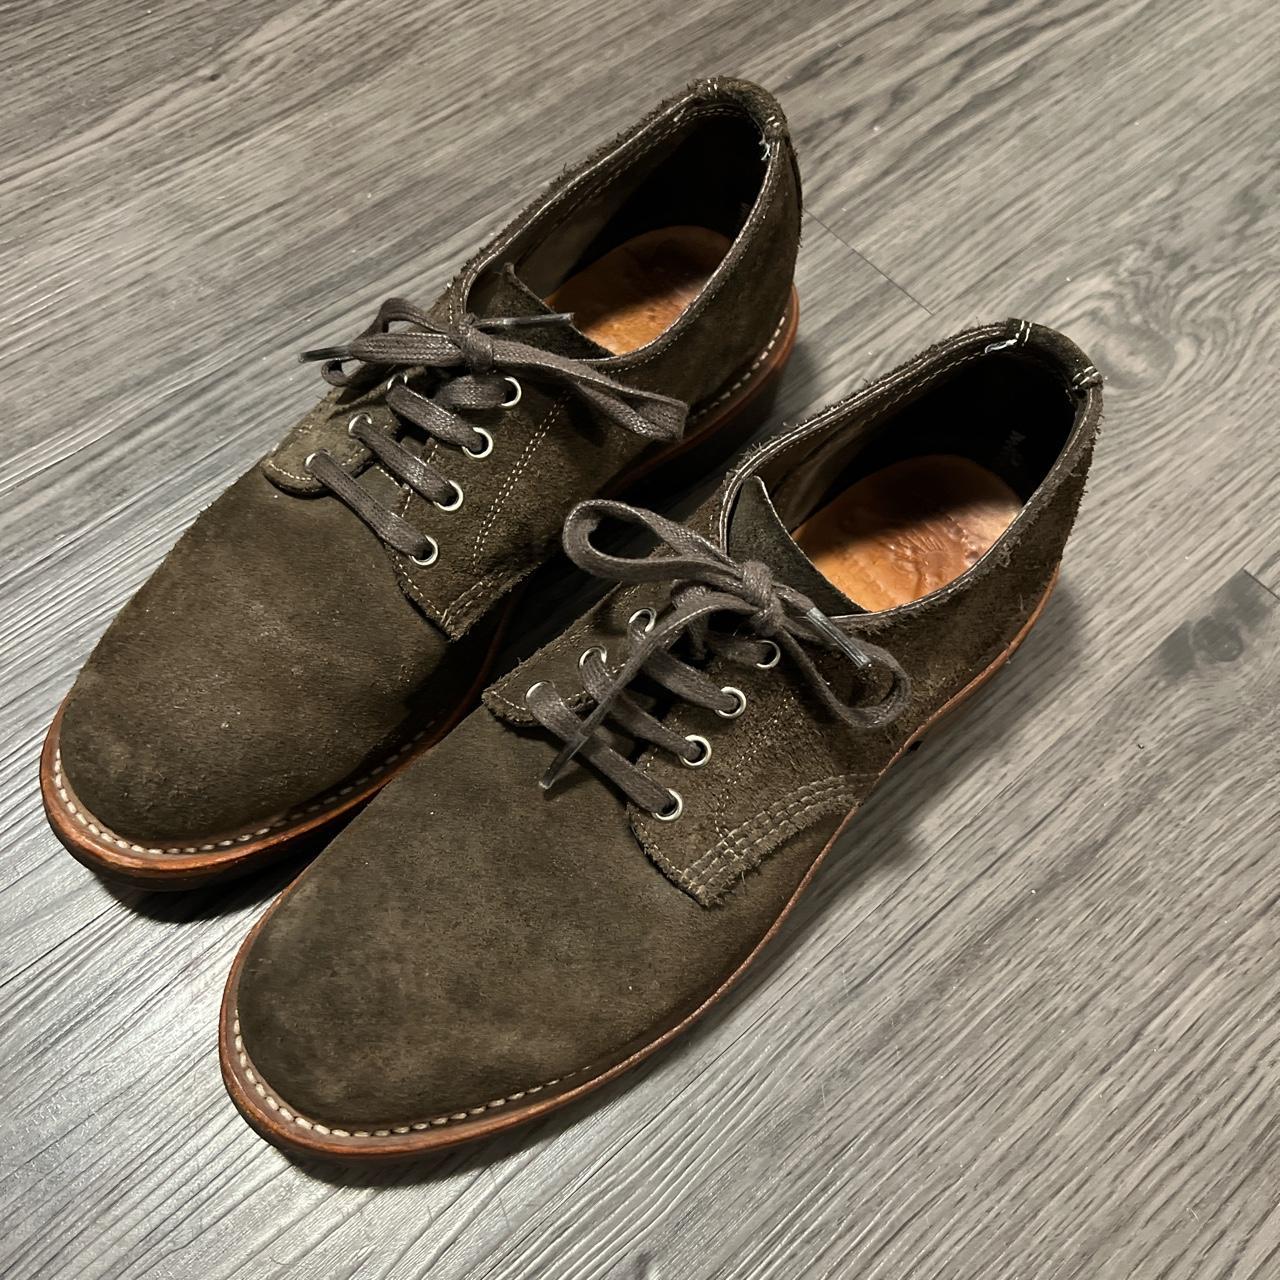 Vintage brown / olive suede Oxford boots dress shoes... - Depop